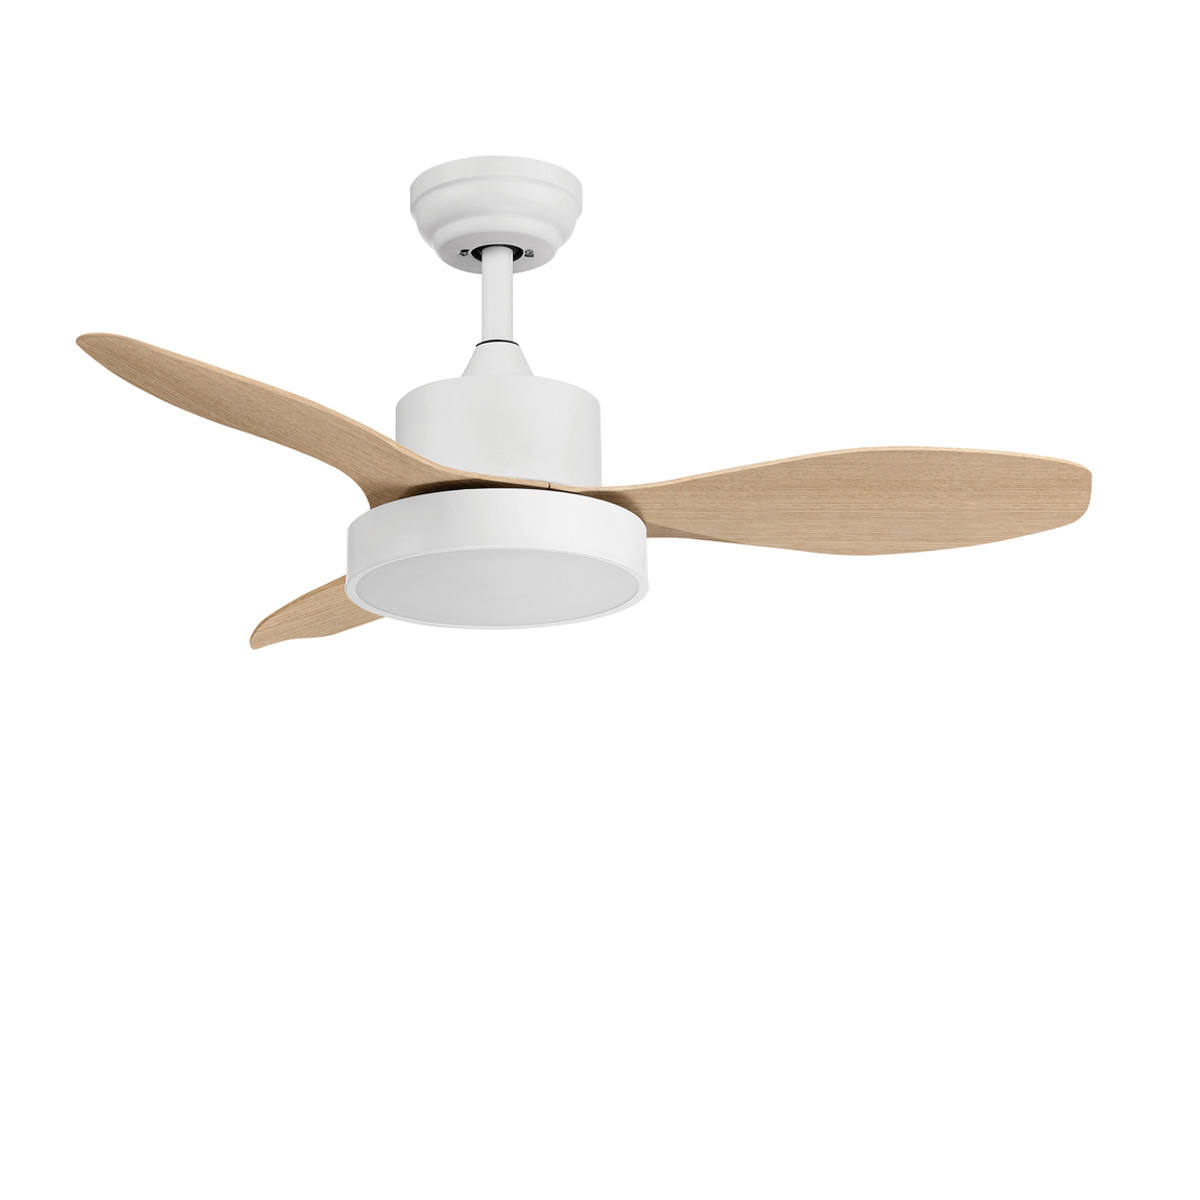 Μικρός λευκός ανεμιστήρας οροφής με φτερά σε φυσικό χρώμα RIGA XS σmall white ceiling fan with natural blades